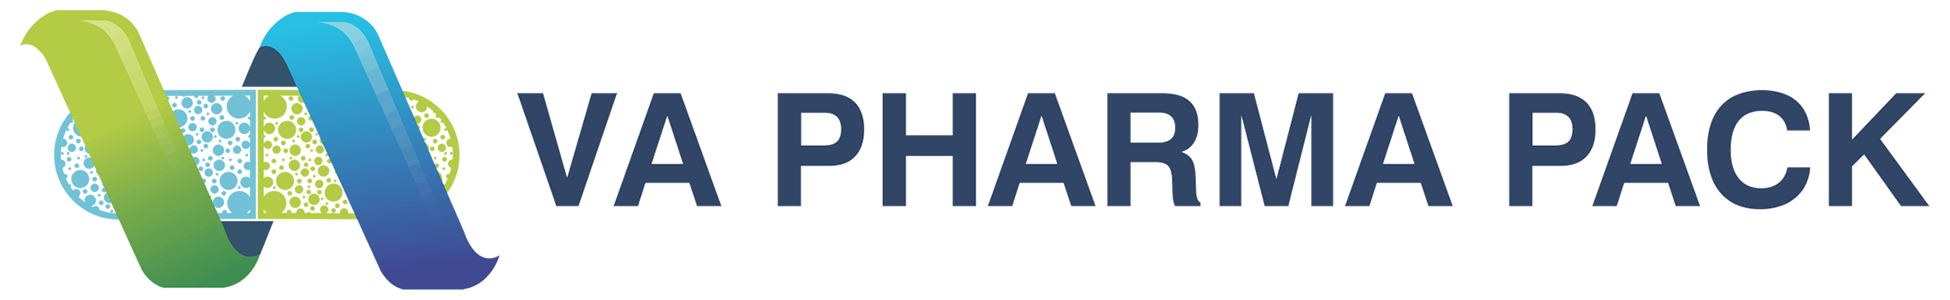 Vapharmapack-logo